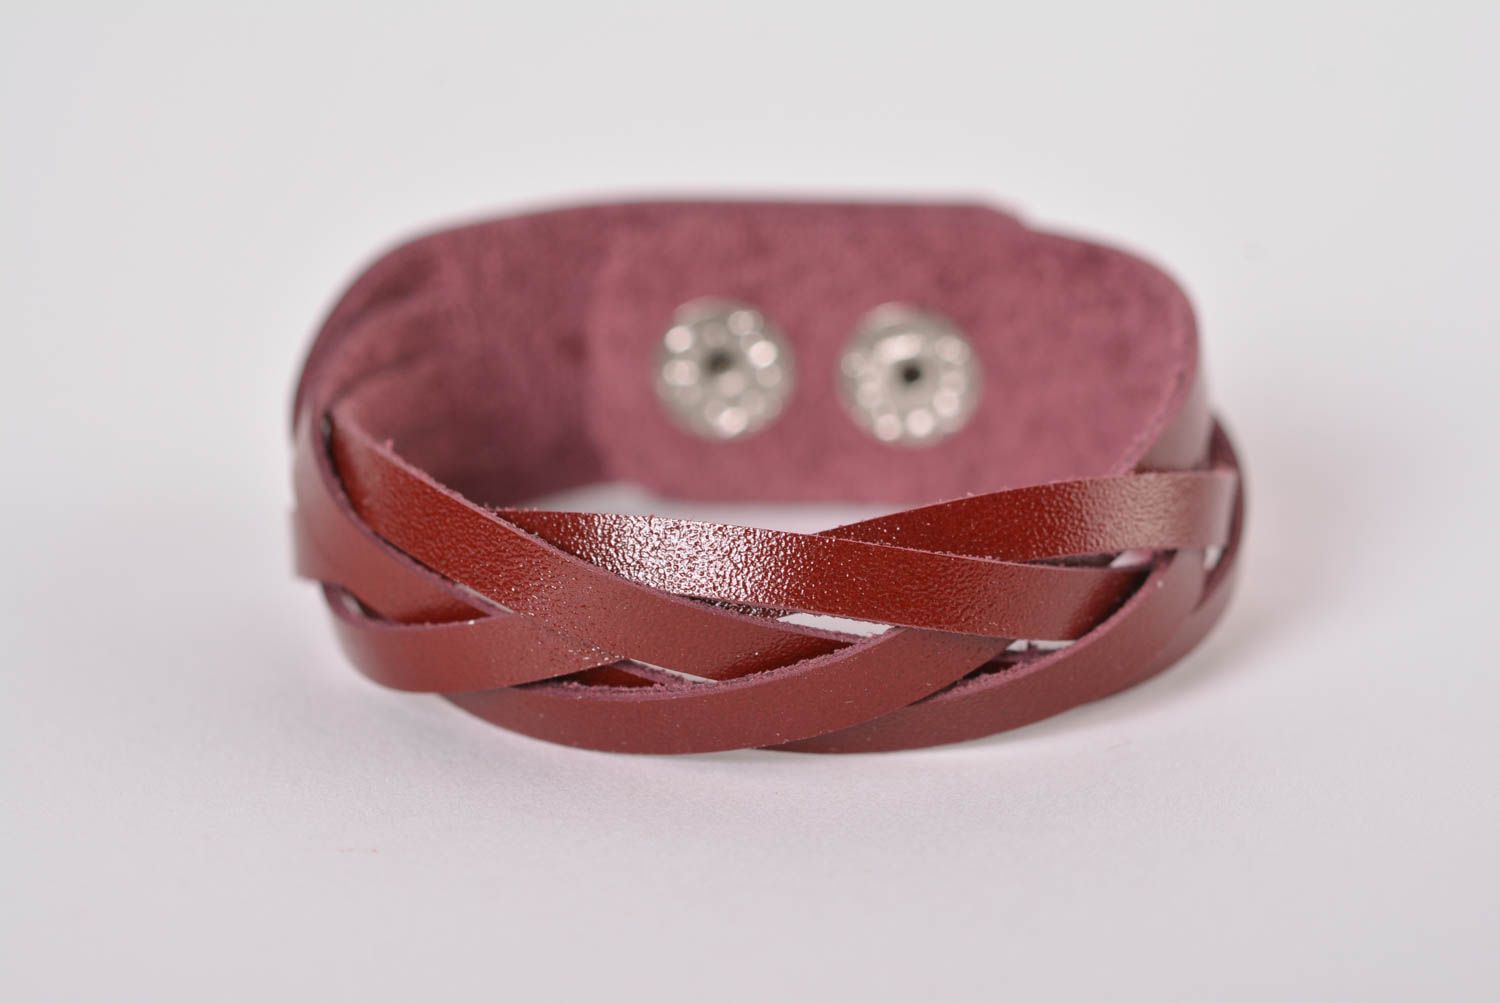 Stylish handmade leather bracelet wrist bracelet leather goods handmade gifts photo 1